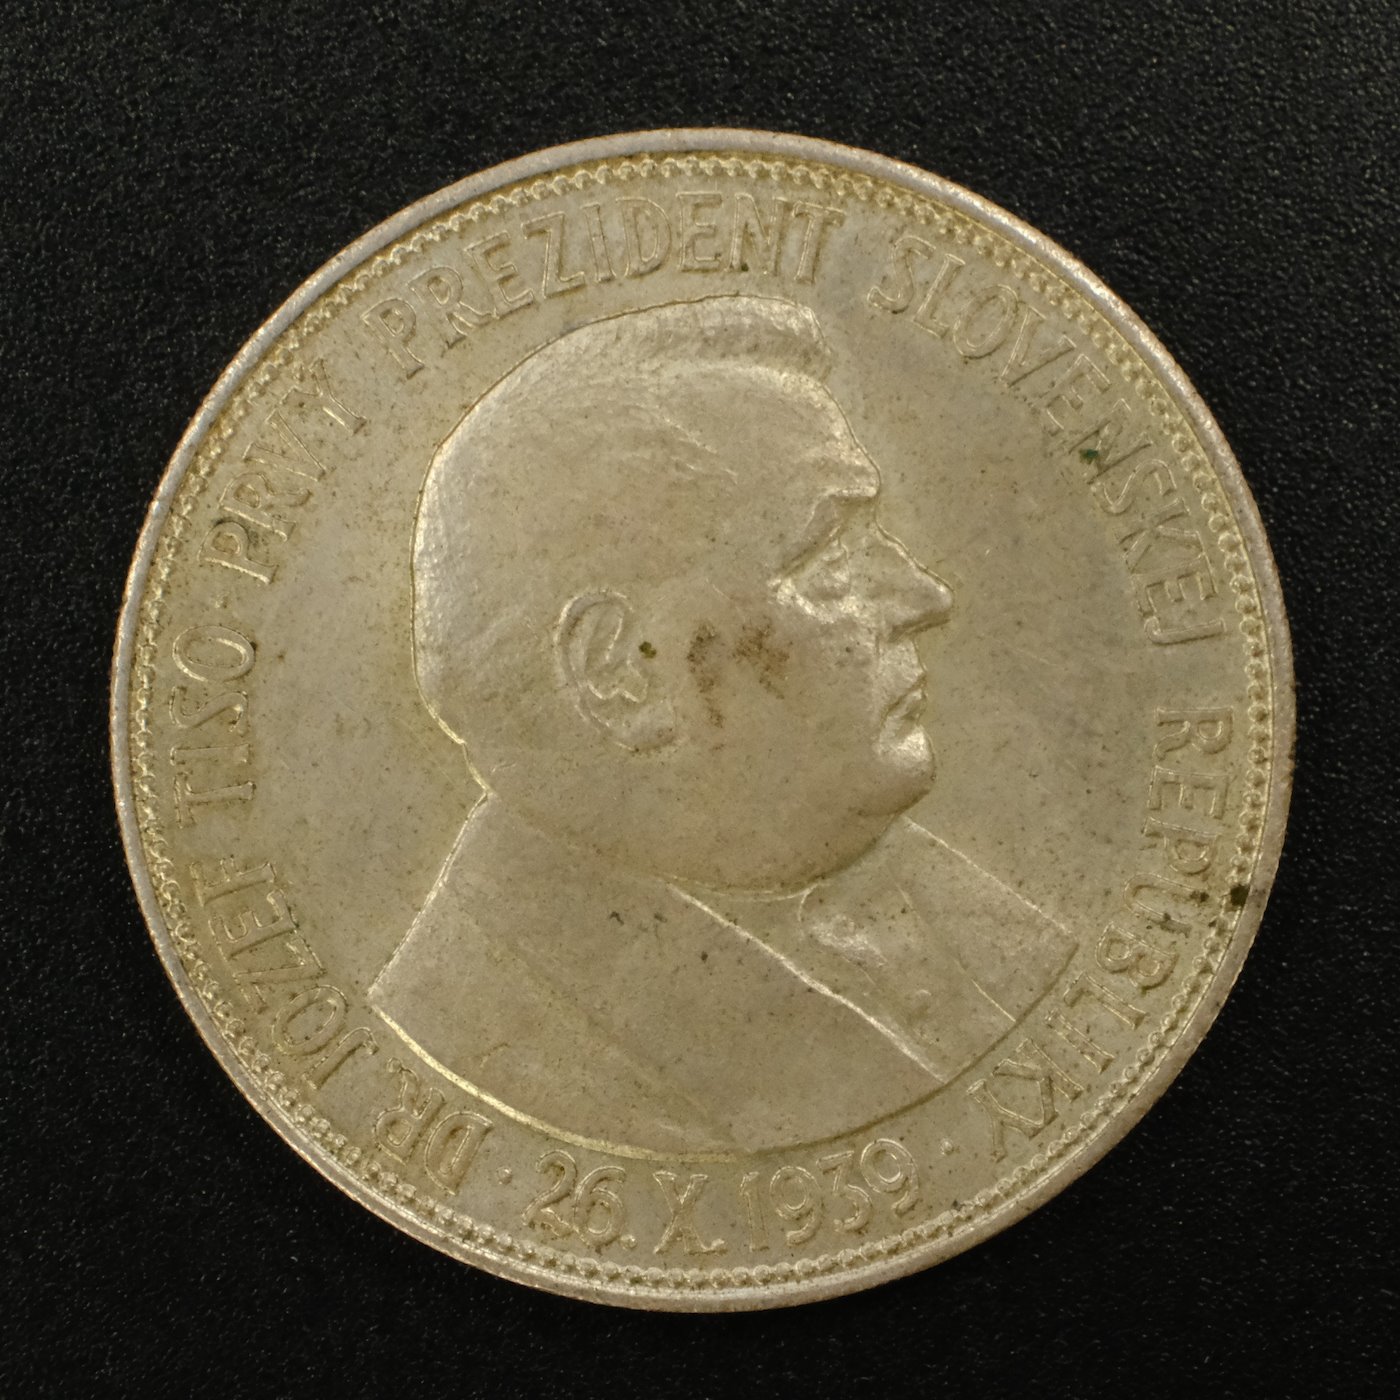 Mince - 20 Ks Dr.Jozef Tiso 26 X.1939. Stříbro 500/1000, hrubá hmotnost 15g